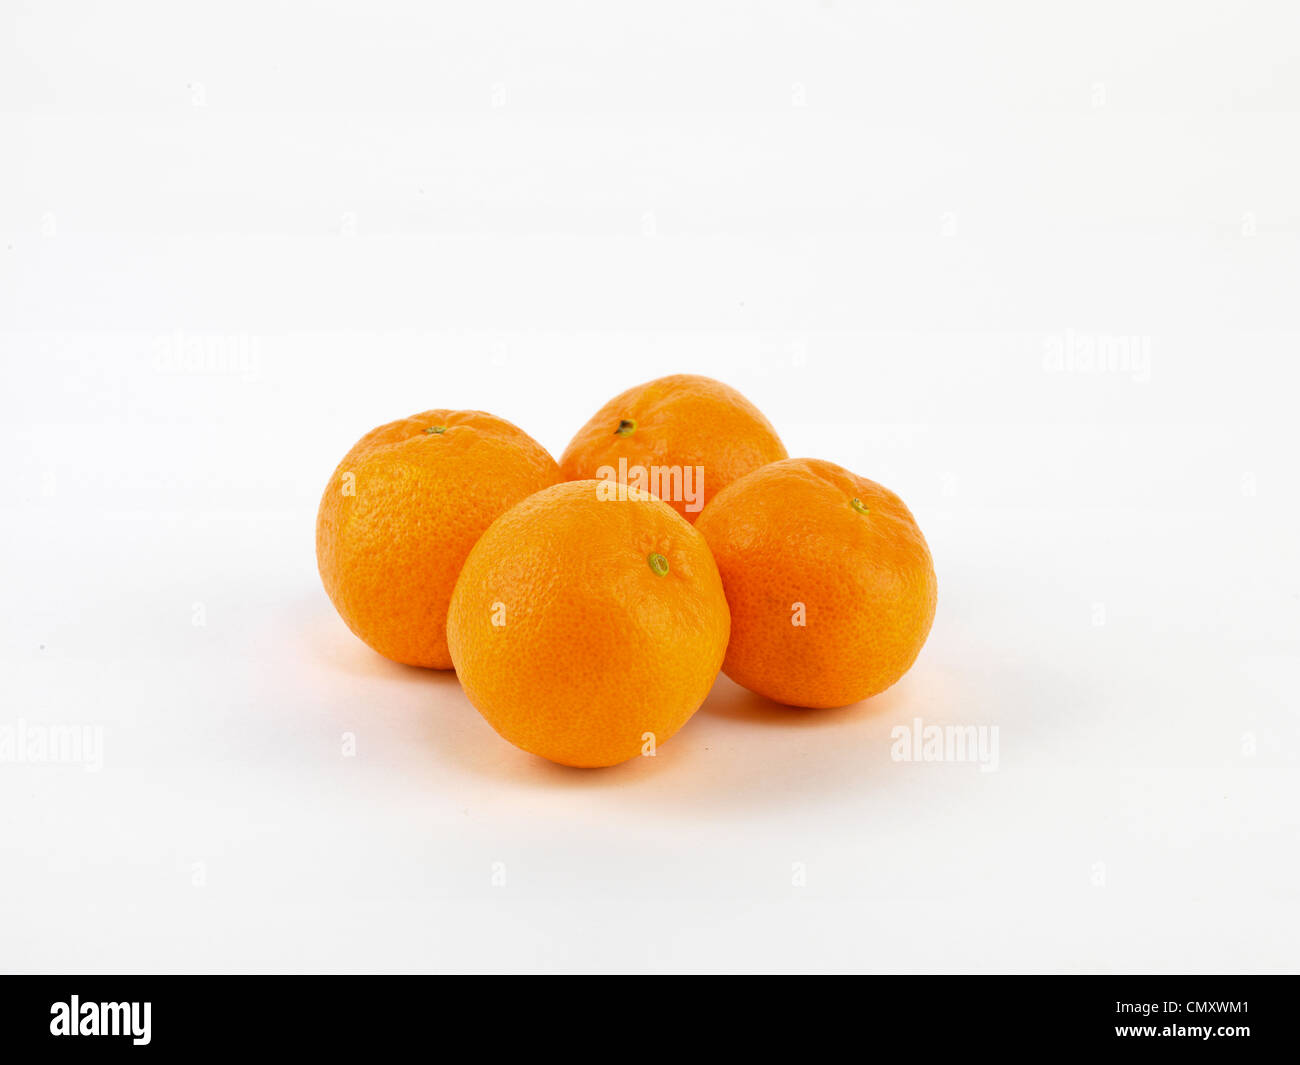 mandarins Stock Photo